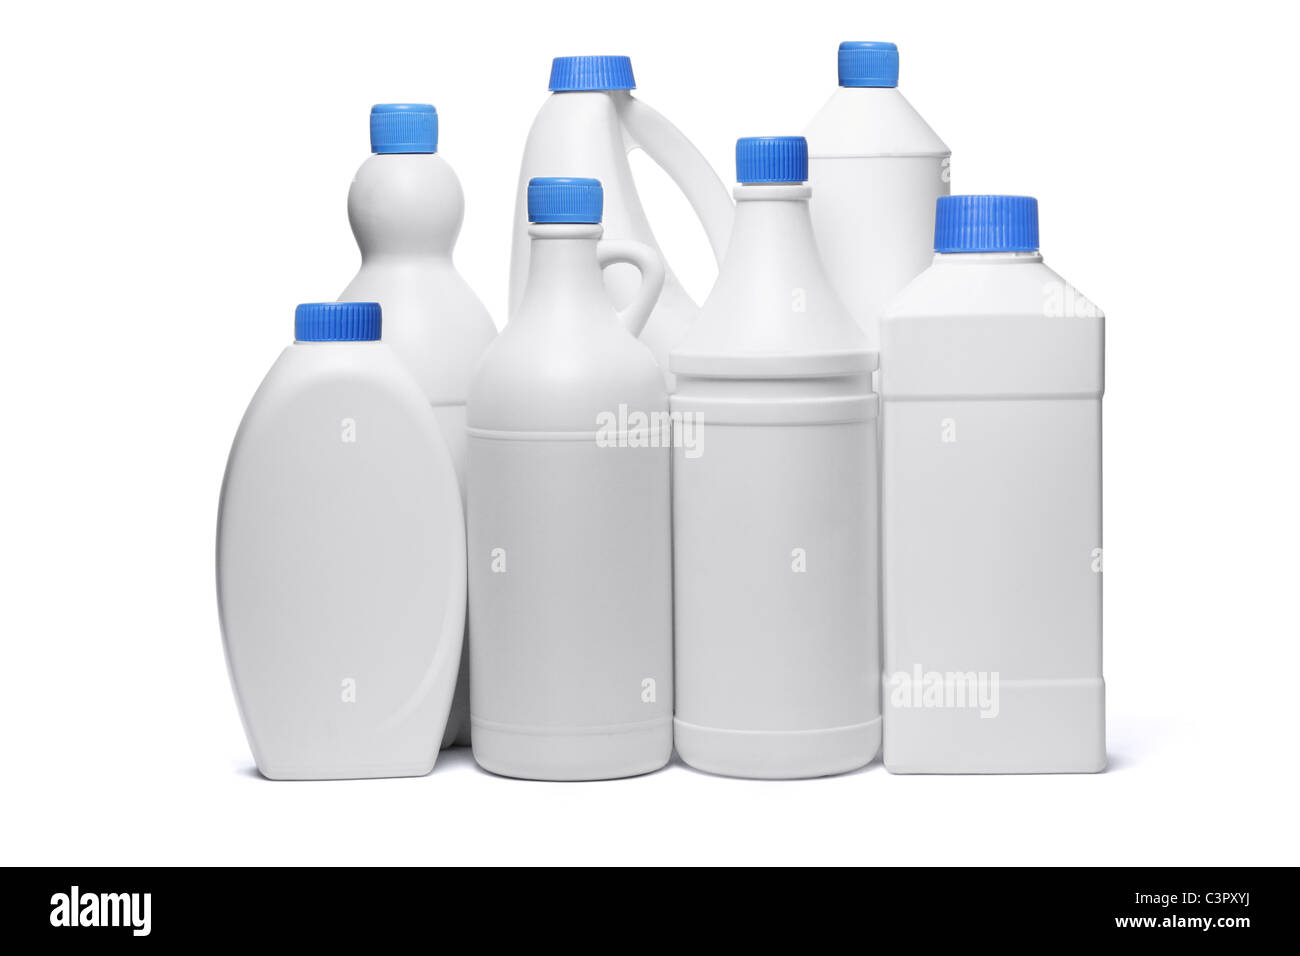 Un assortiment de contenants en plastique pour les détergents ménagers sur fond blanc Banque D'Images